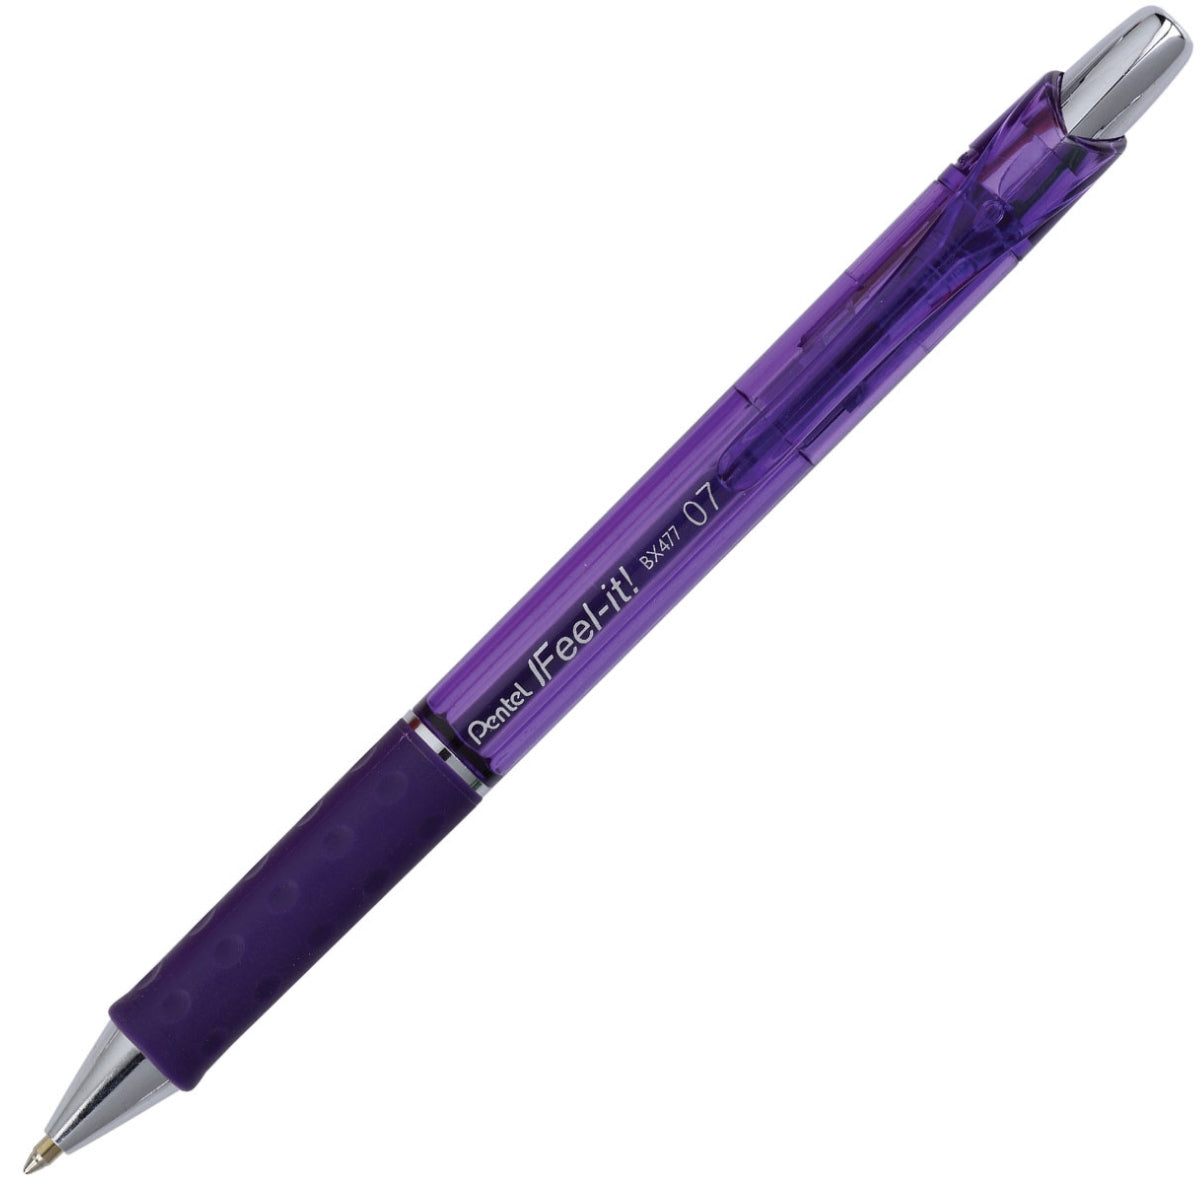 עט-כדורי-pentel-bx477-0-7-f-כחול